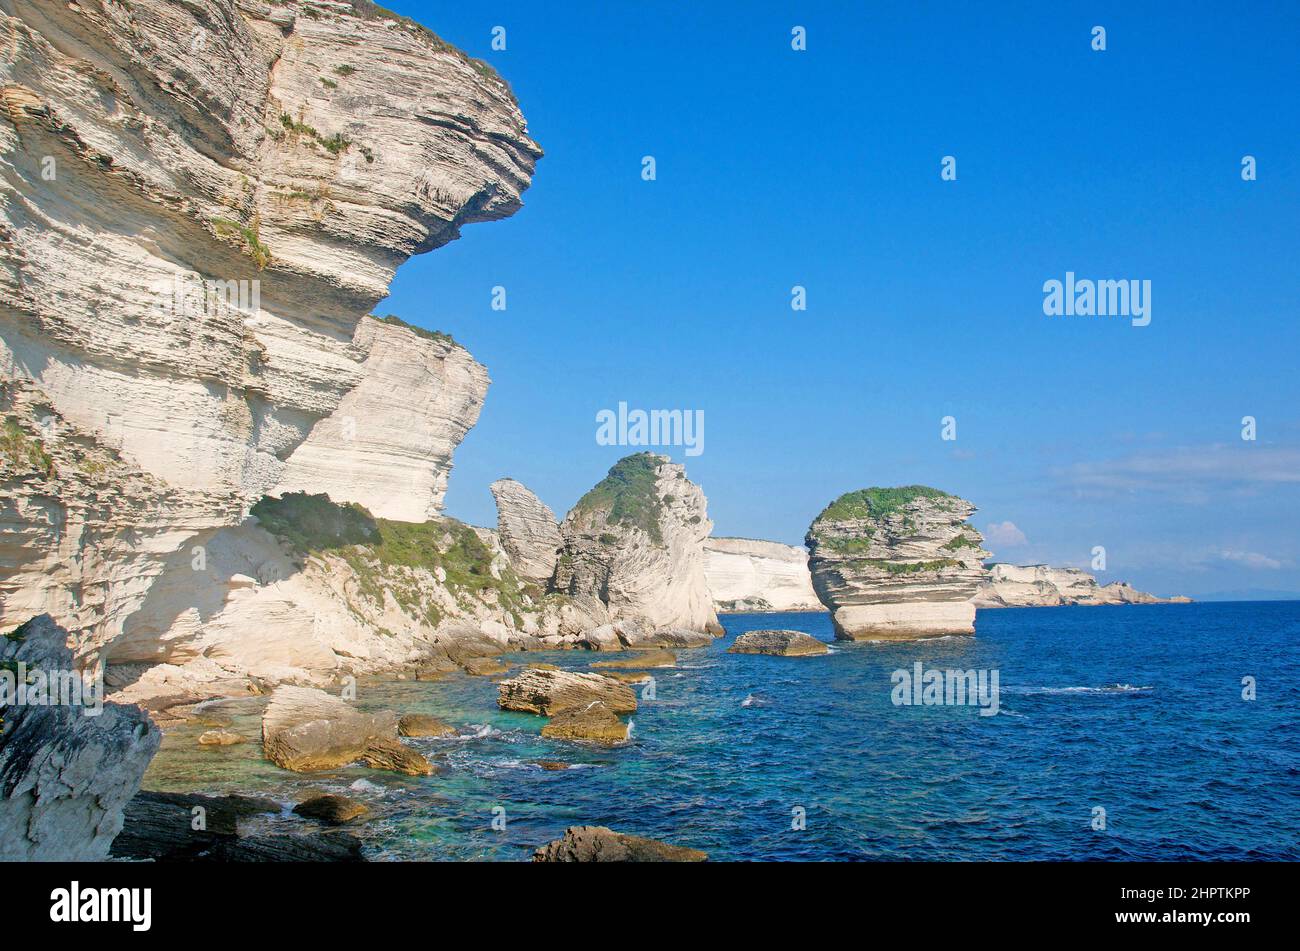 the cliffs of Bonifacio, the 'grain de sable', South Corsica, France Stock Photo